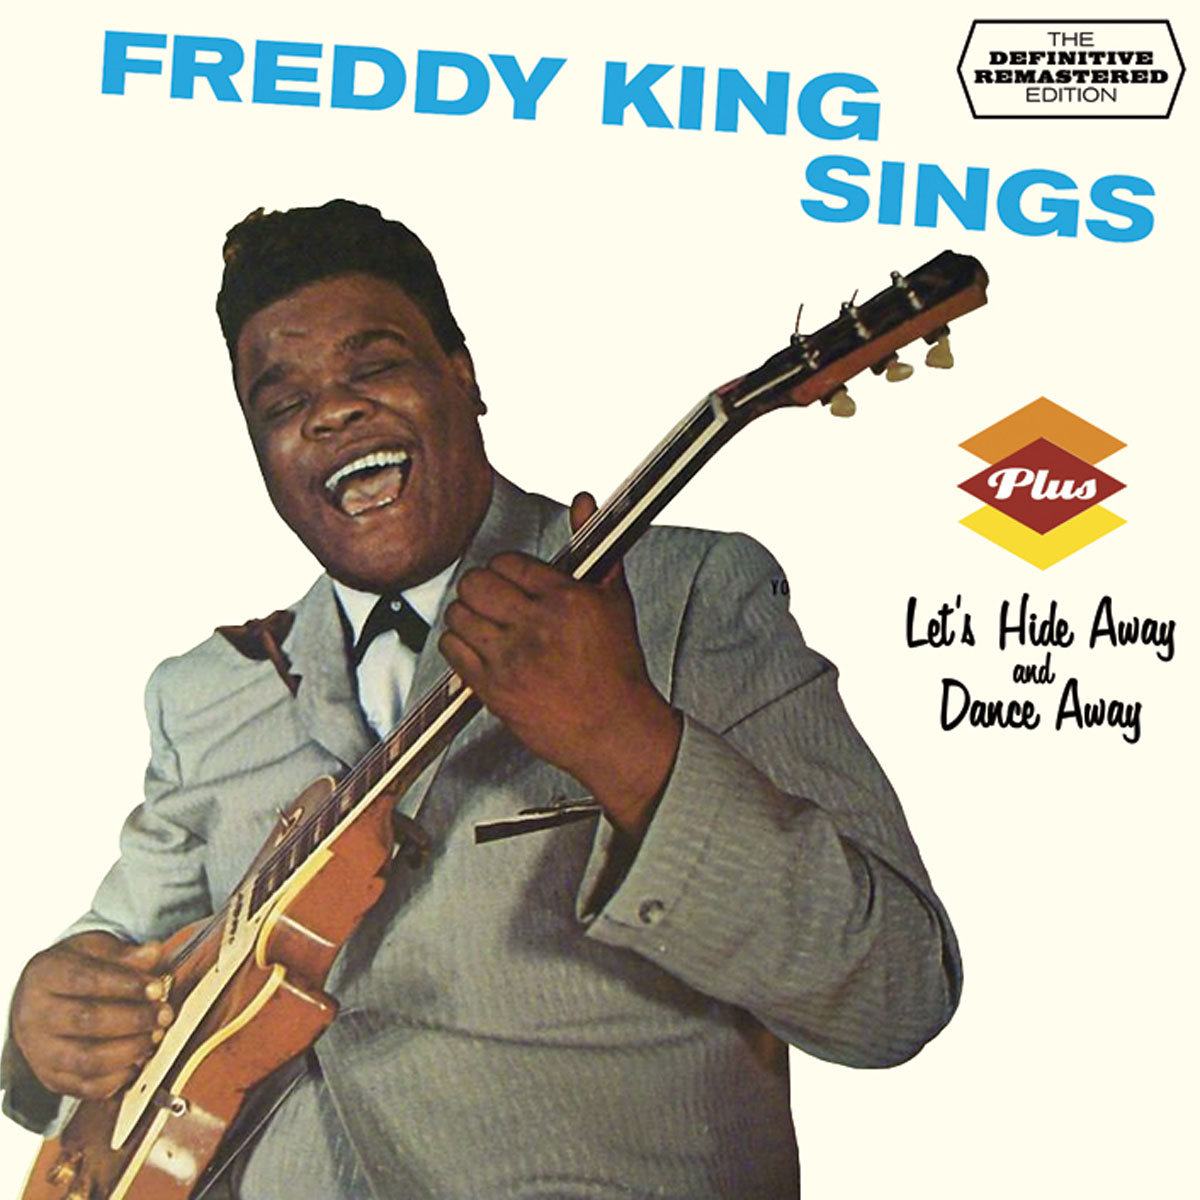 Freddy King Sings + Let's Hide Away And Dance Away + 3 Bonus